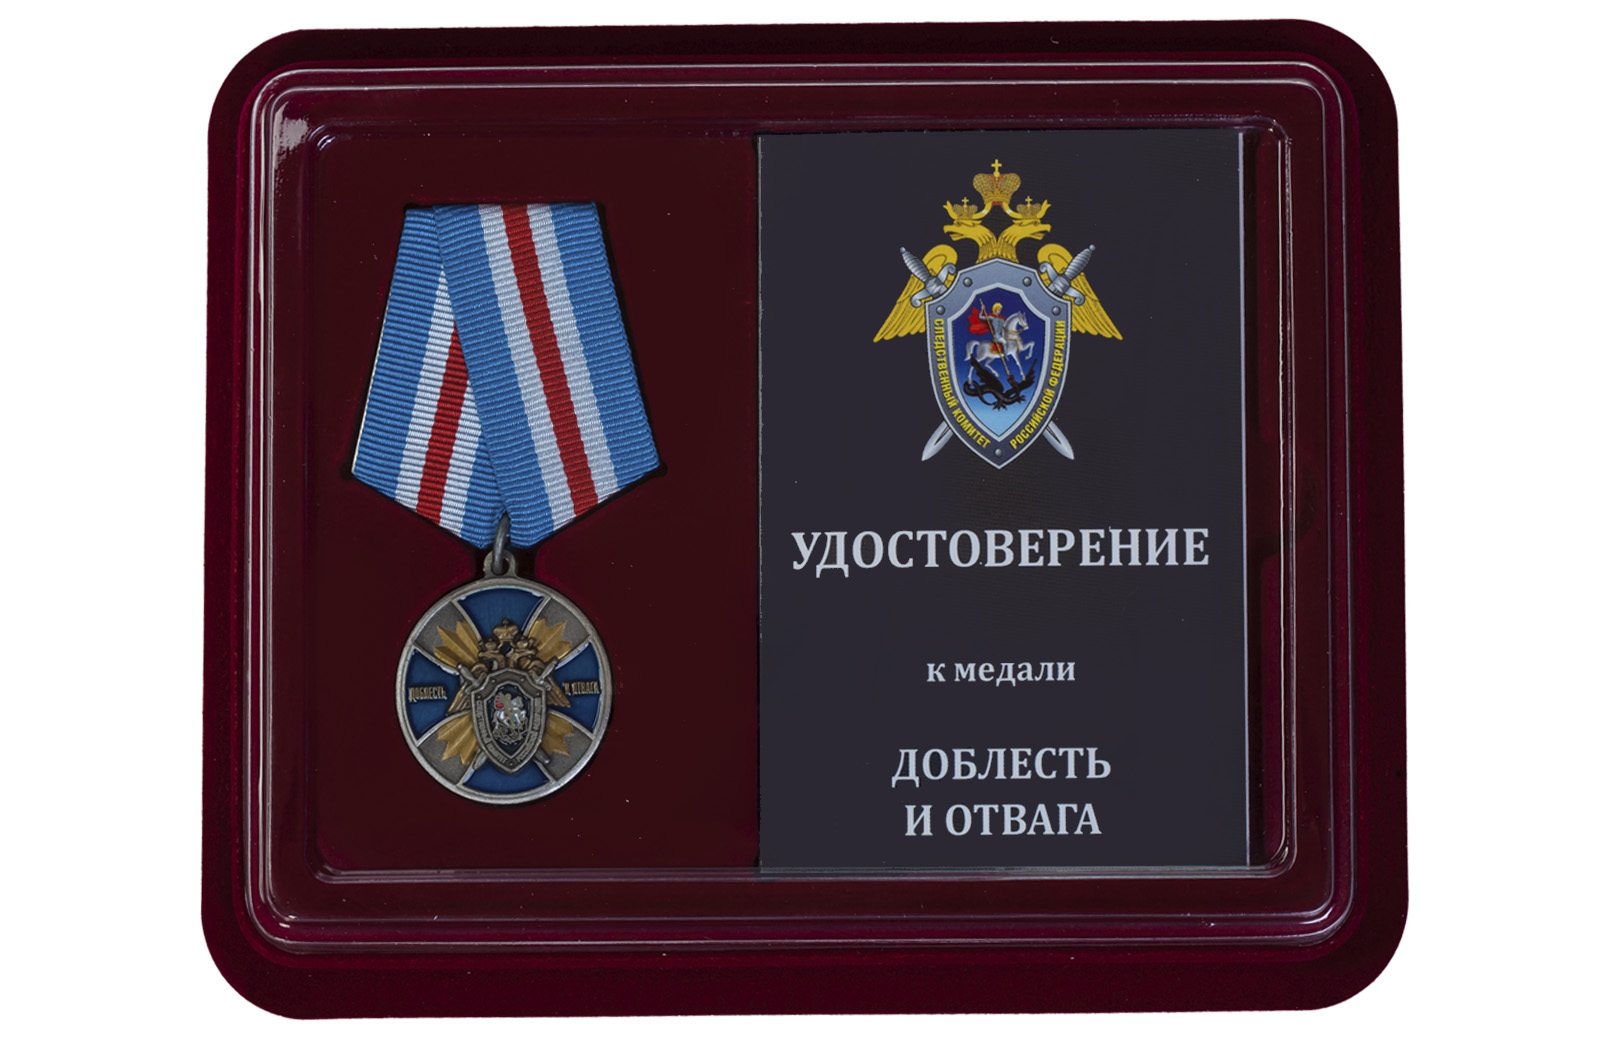 Купить медаль СК России Доблесть и отвага оптом или в розницу